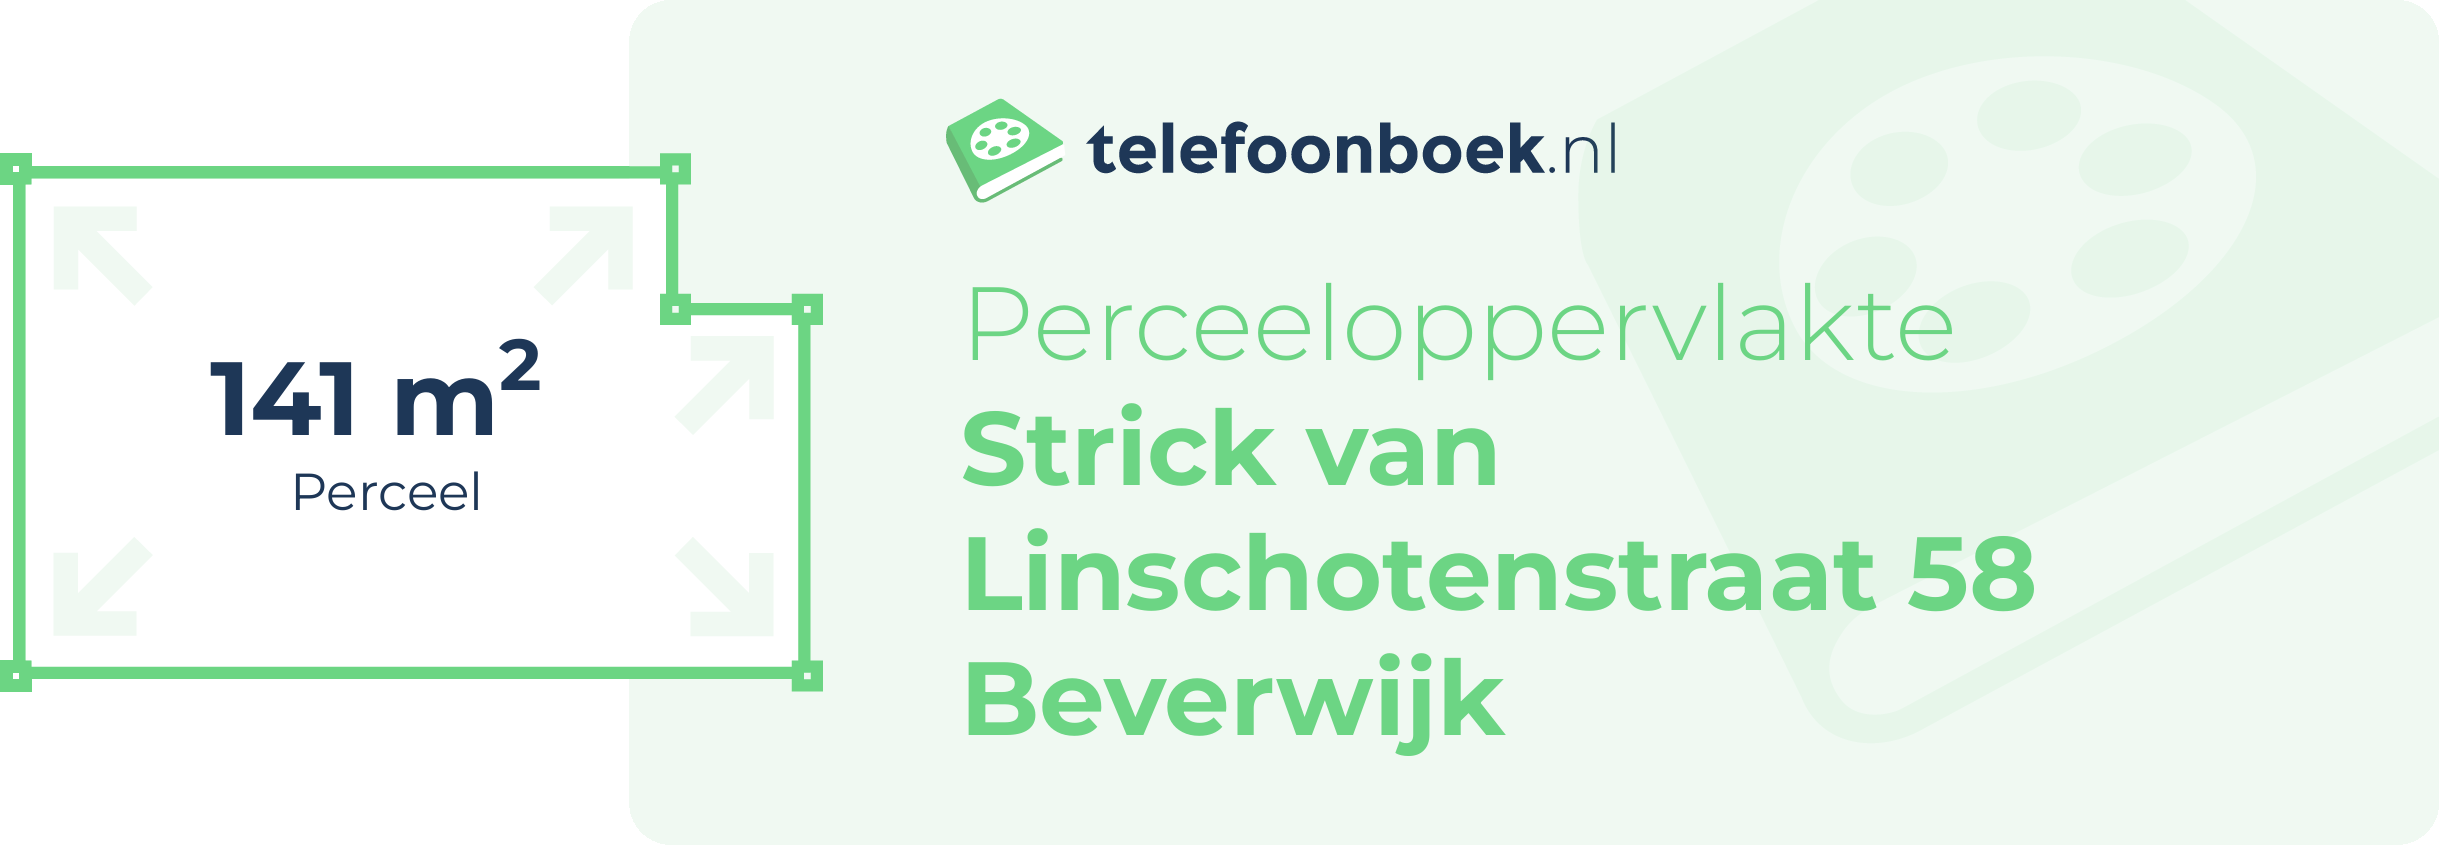 Perceeloppervlakte Strick Van Linschotenstraat 58 Beverwijk